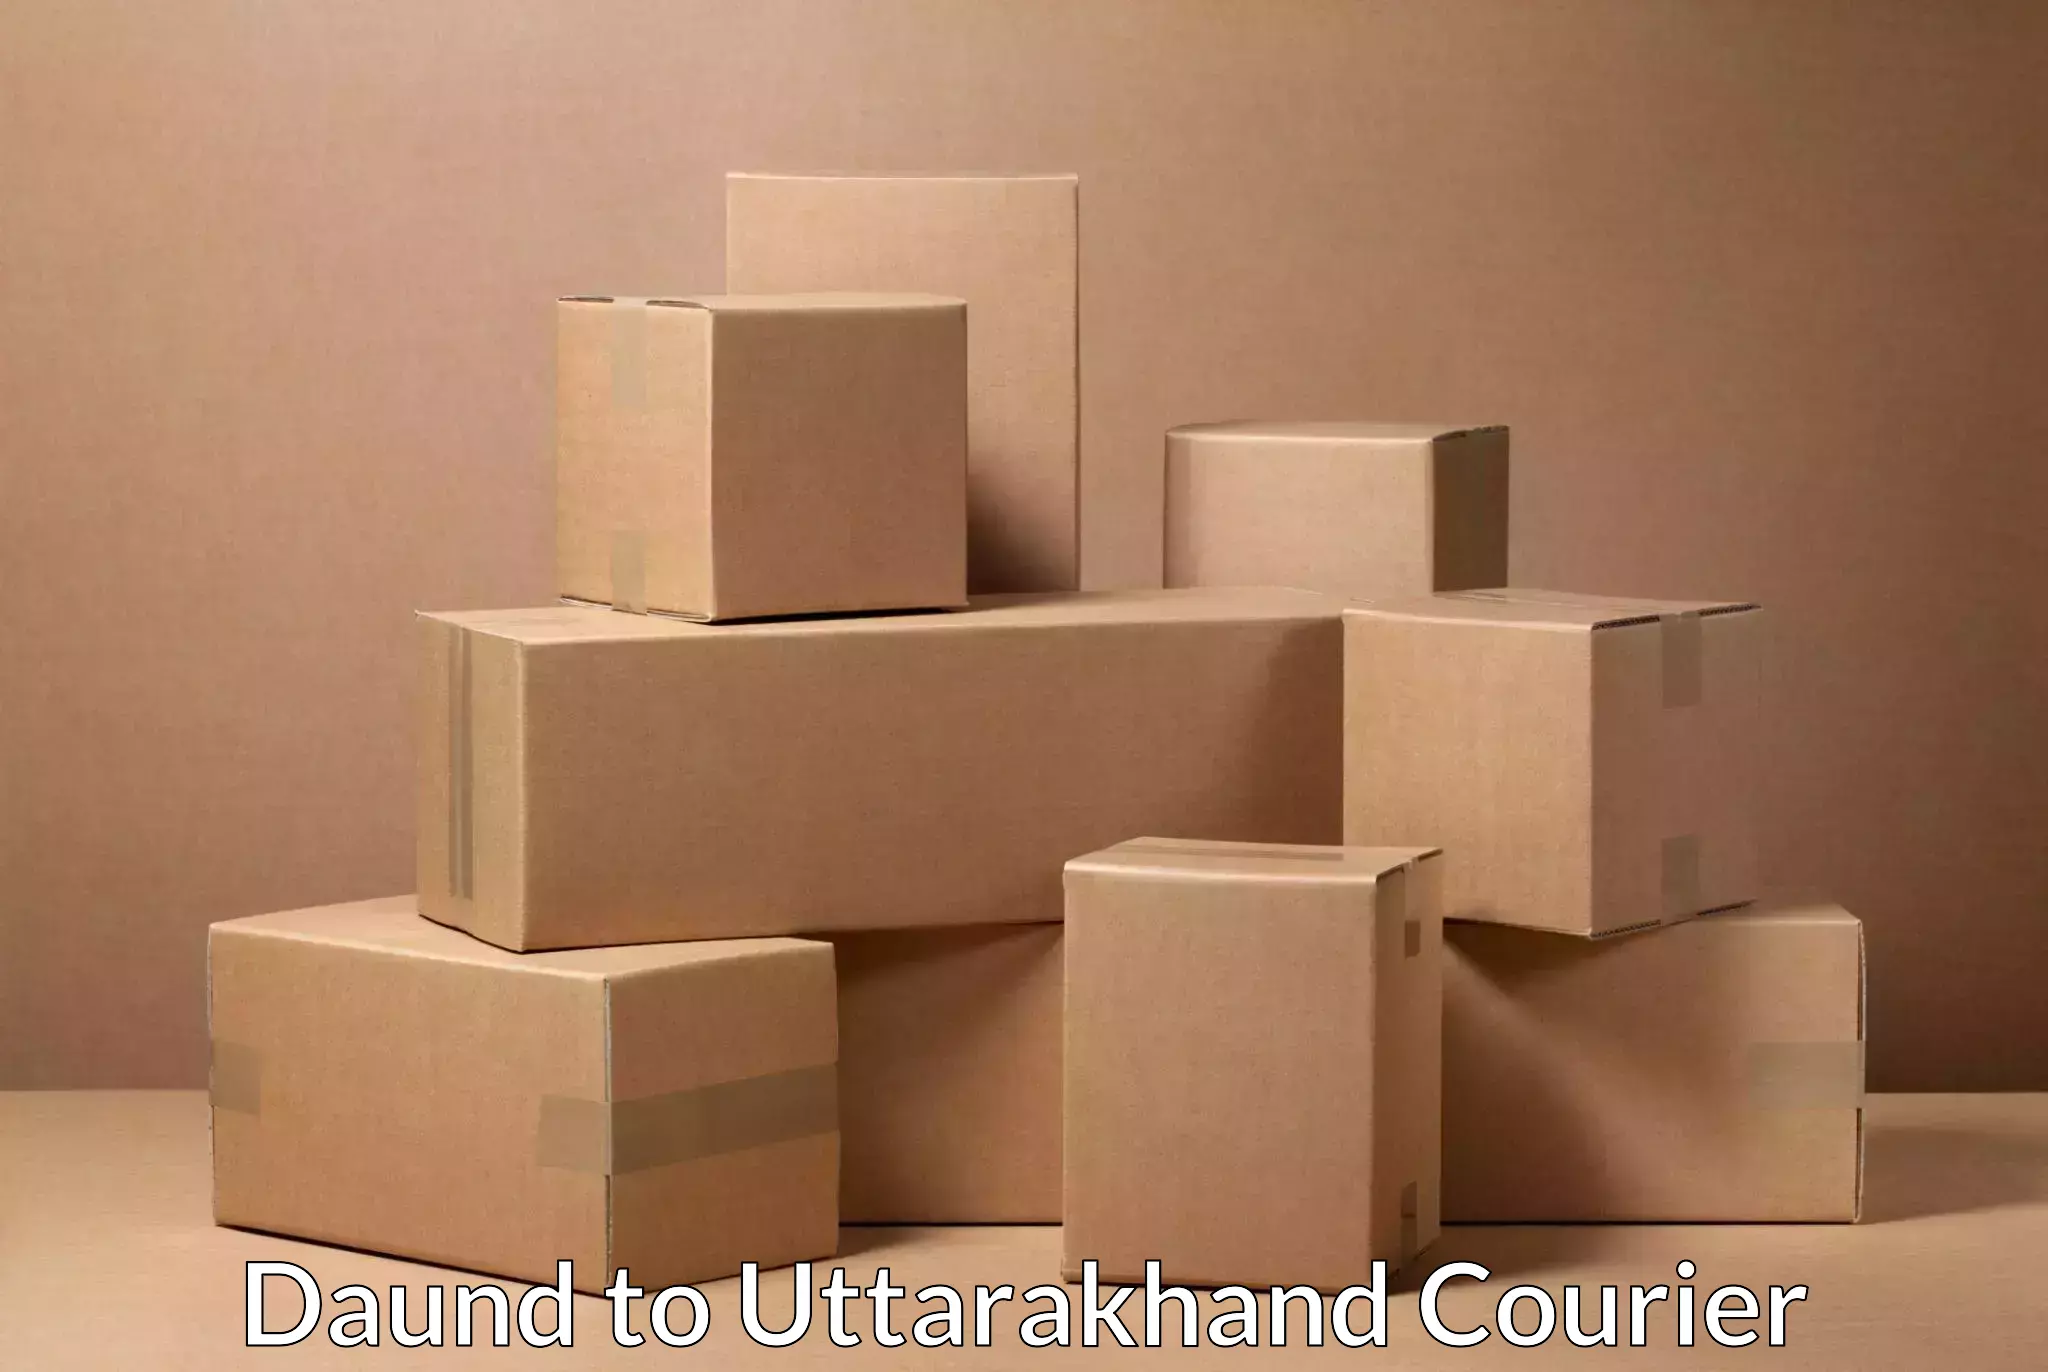 Urgent courier needs Daund to Uttarakhand